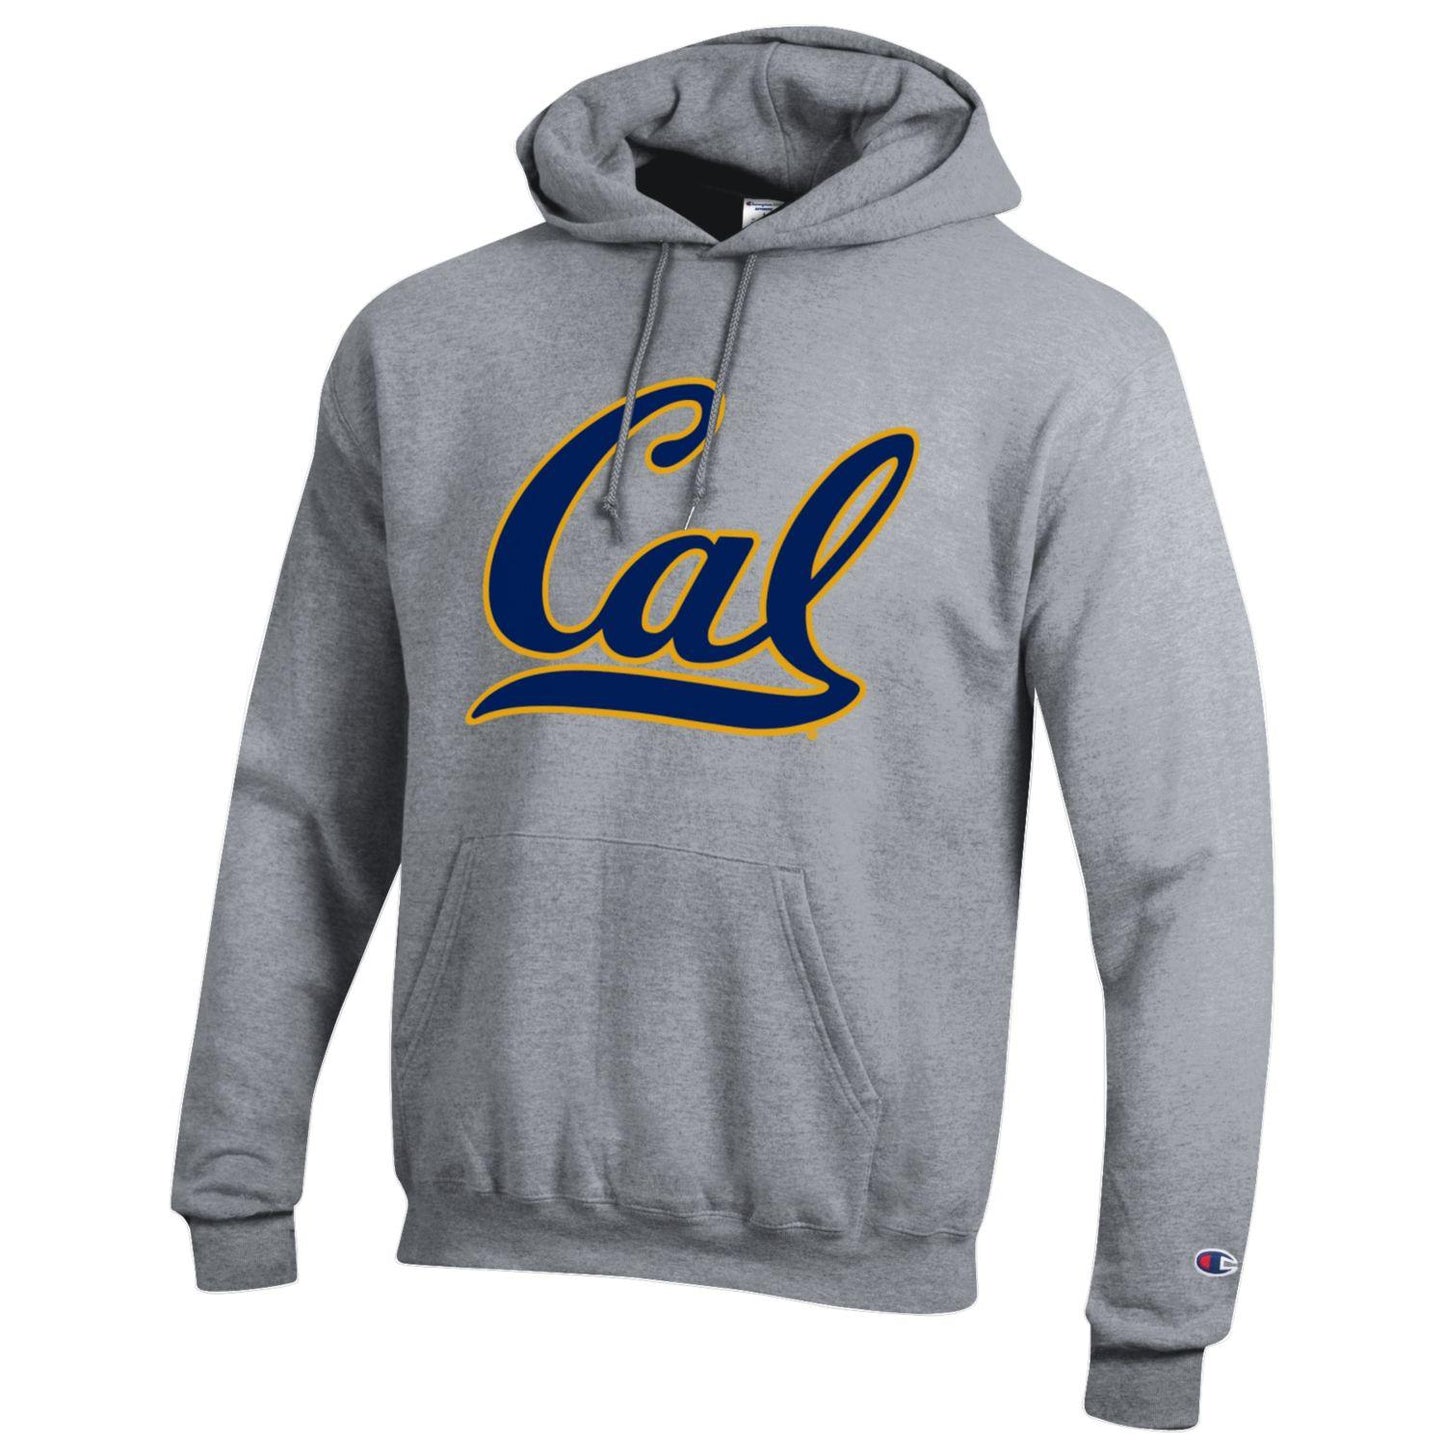 U.C. Berkeley Cal double layer applique Champion hoodie sweatshirt-Grey-Shop College Wear